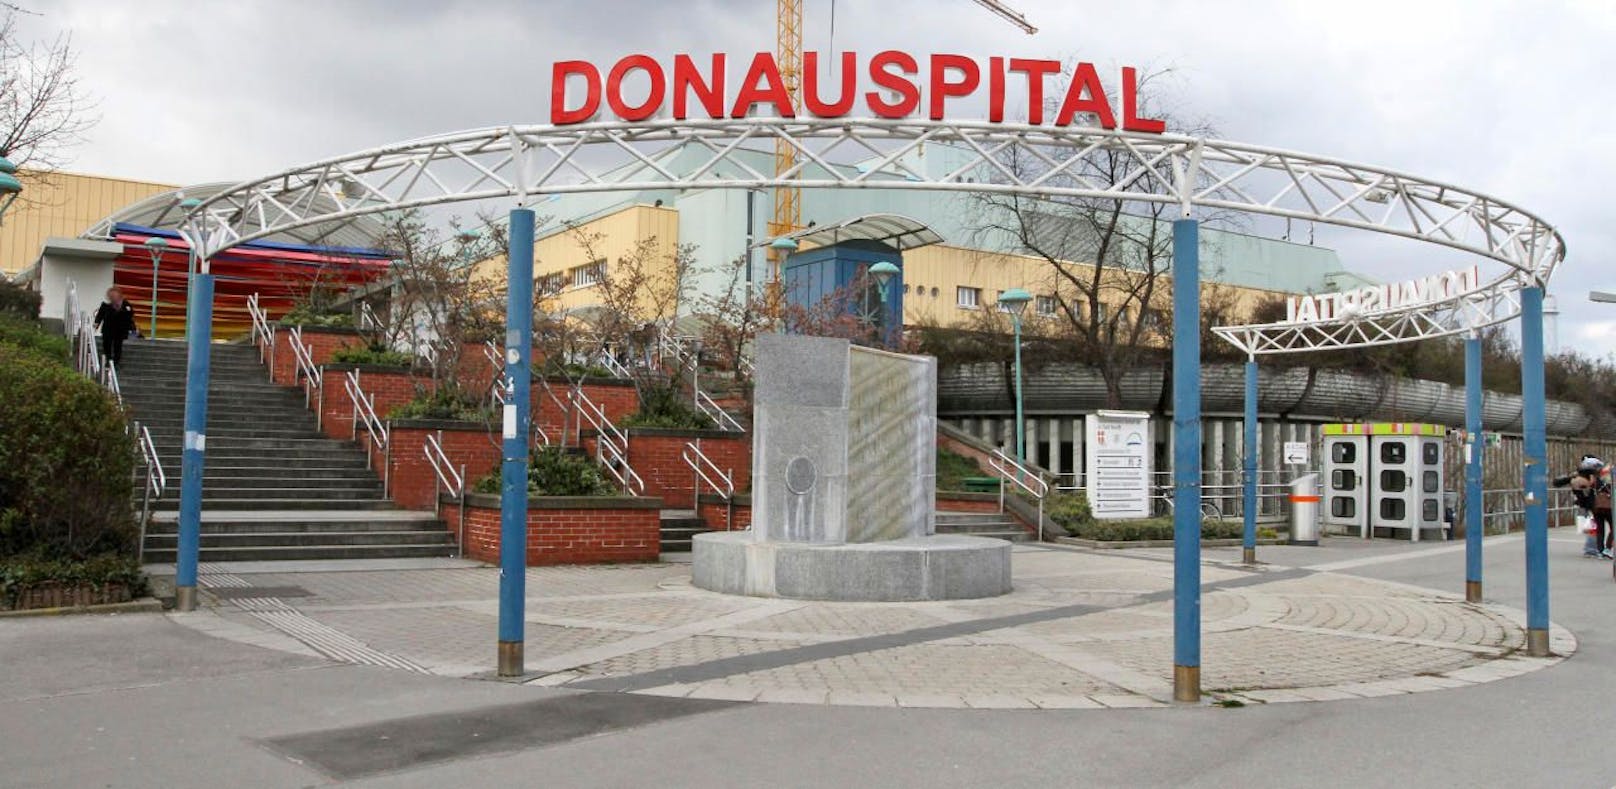 Donauspital Wien - hier kam die kleine Patientin hin